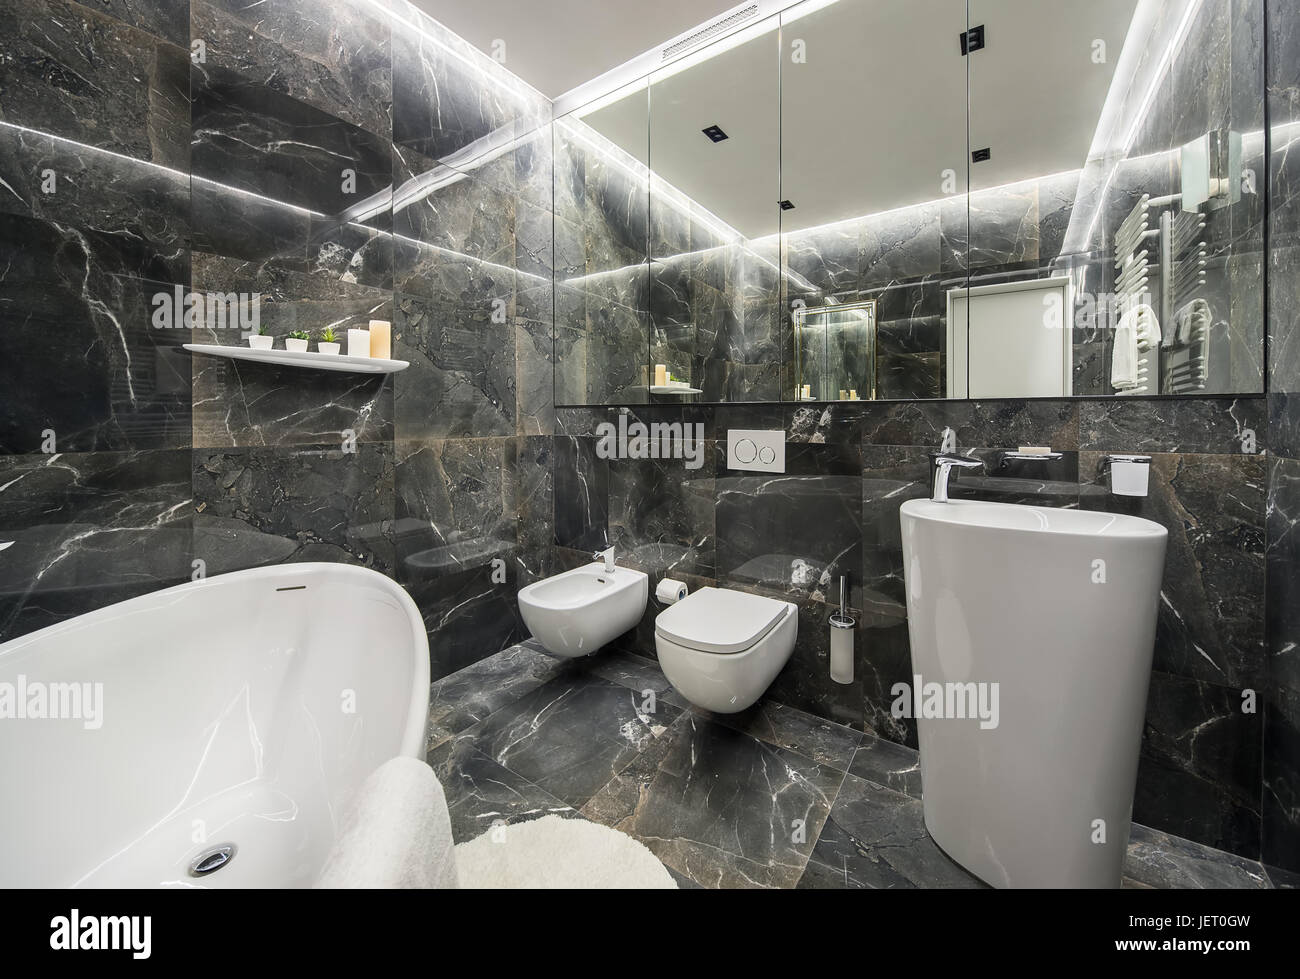 Modernes Badezimmer mit strukturierten dunklen Fliesen und leuchtenden Lampen. Es ist ein weißes Bad, großem Spiegel, WC und Bidet, großer Spüle mit einem Chrom-Armatur, Stockfoto